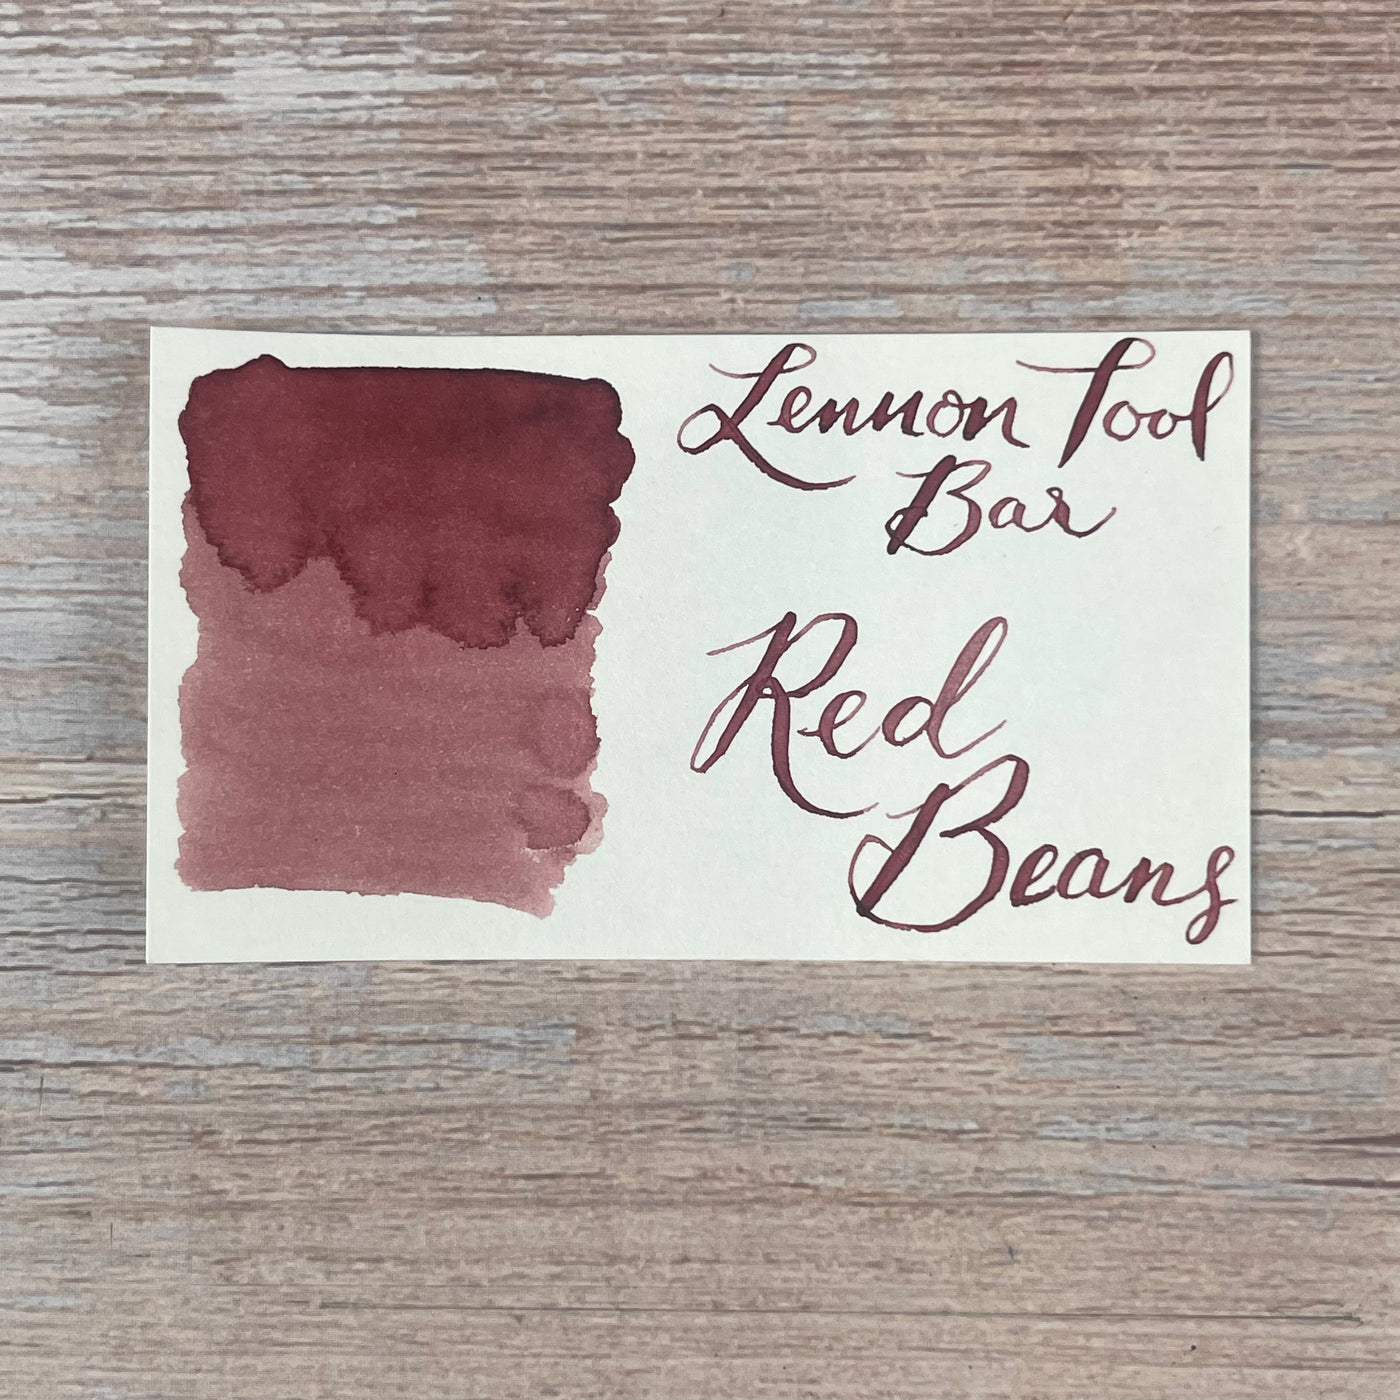 Lennon Tool Bar Red Beans - 30ml Bottled Ink